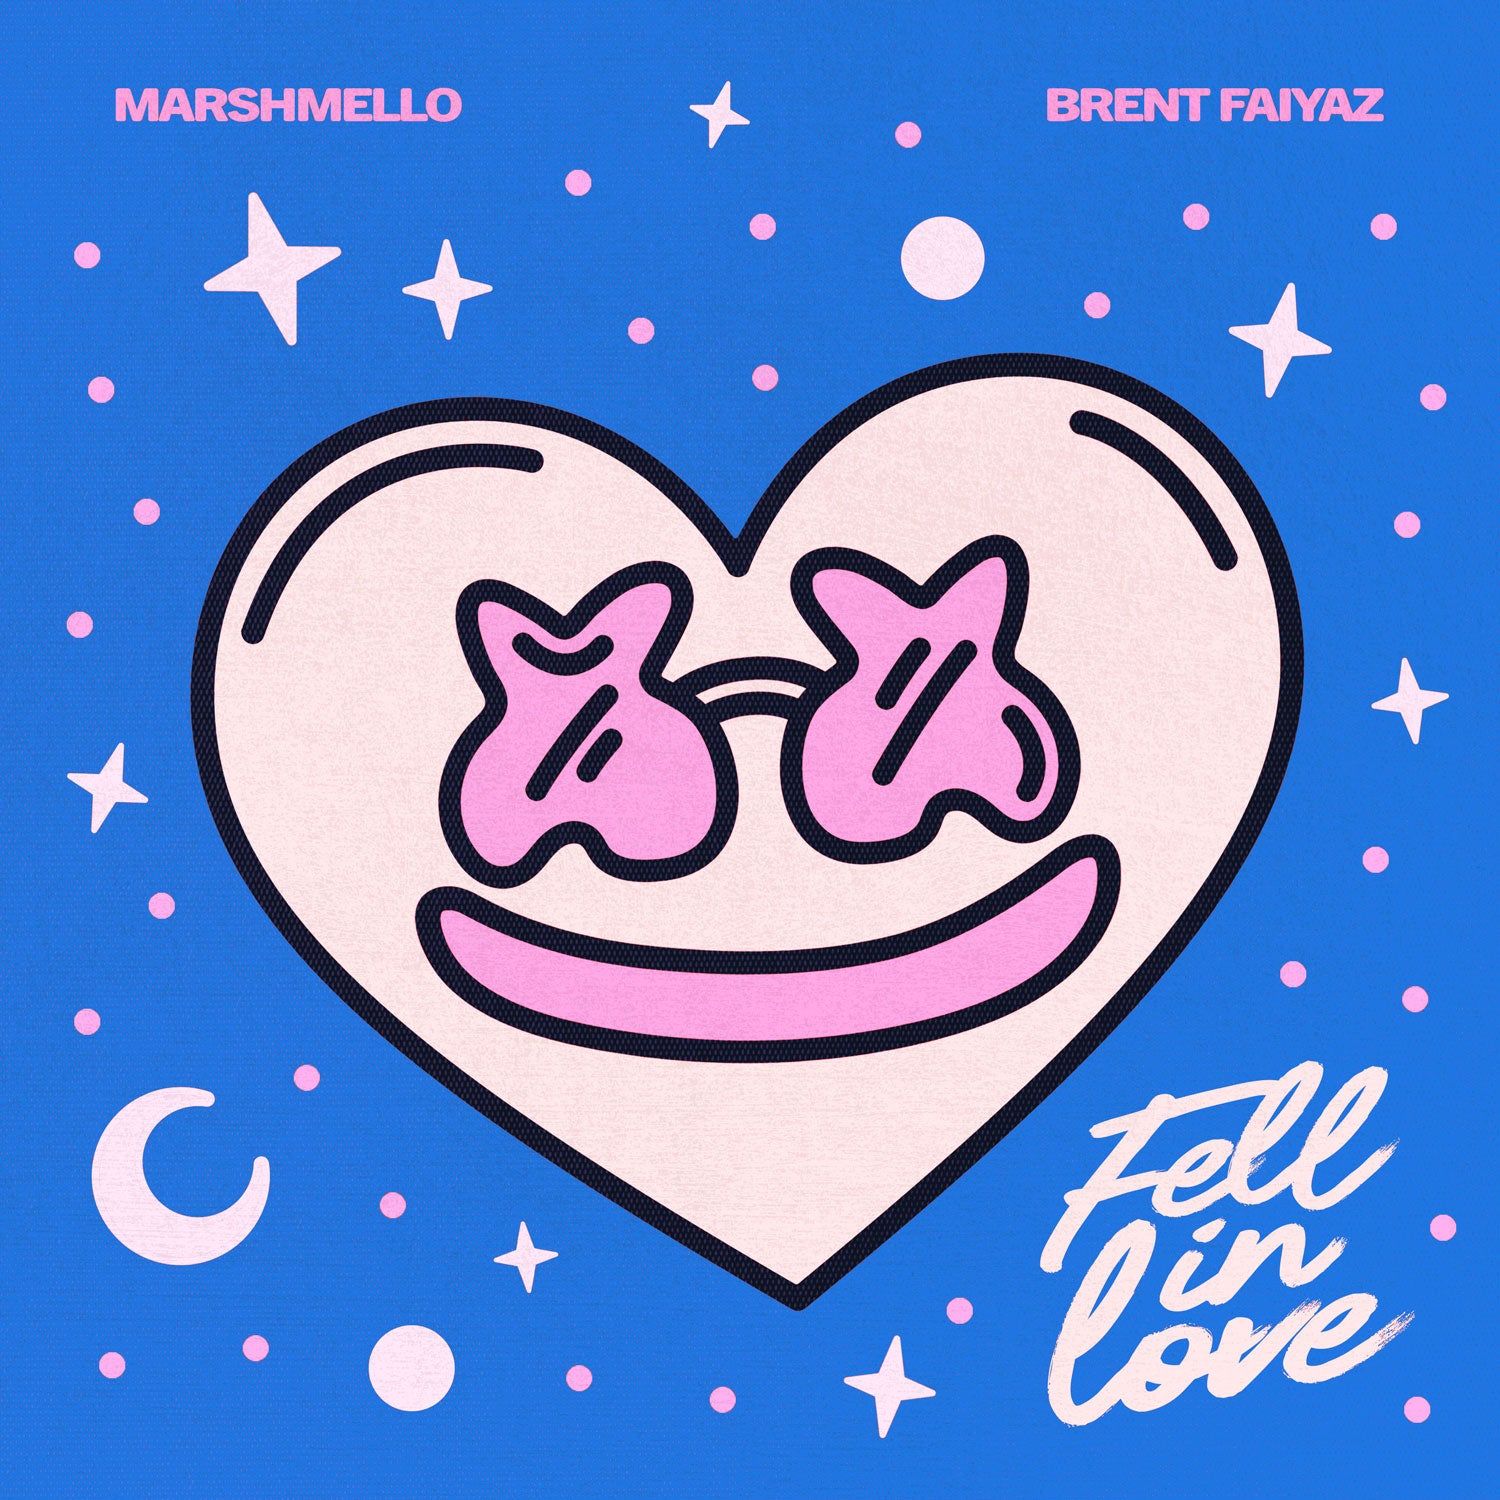 Marshmello and Brent Faiyaz's new single 